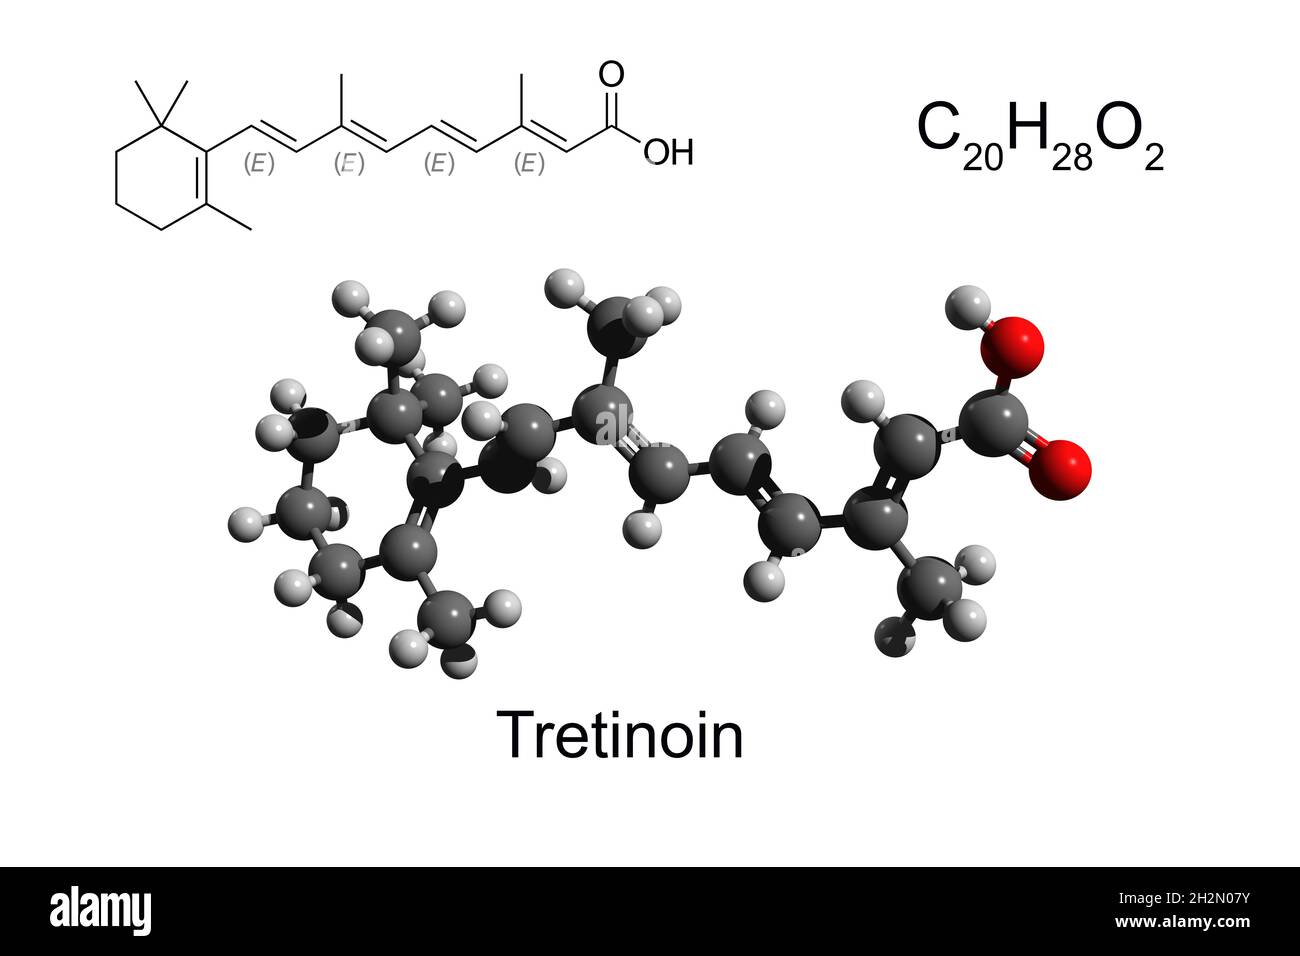 Chemische Formel, Strukturformel und 3D-Ball-and-Stick-Modell eines Retinoids Tretinoin, weißer Hintergrund Stockfoto